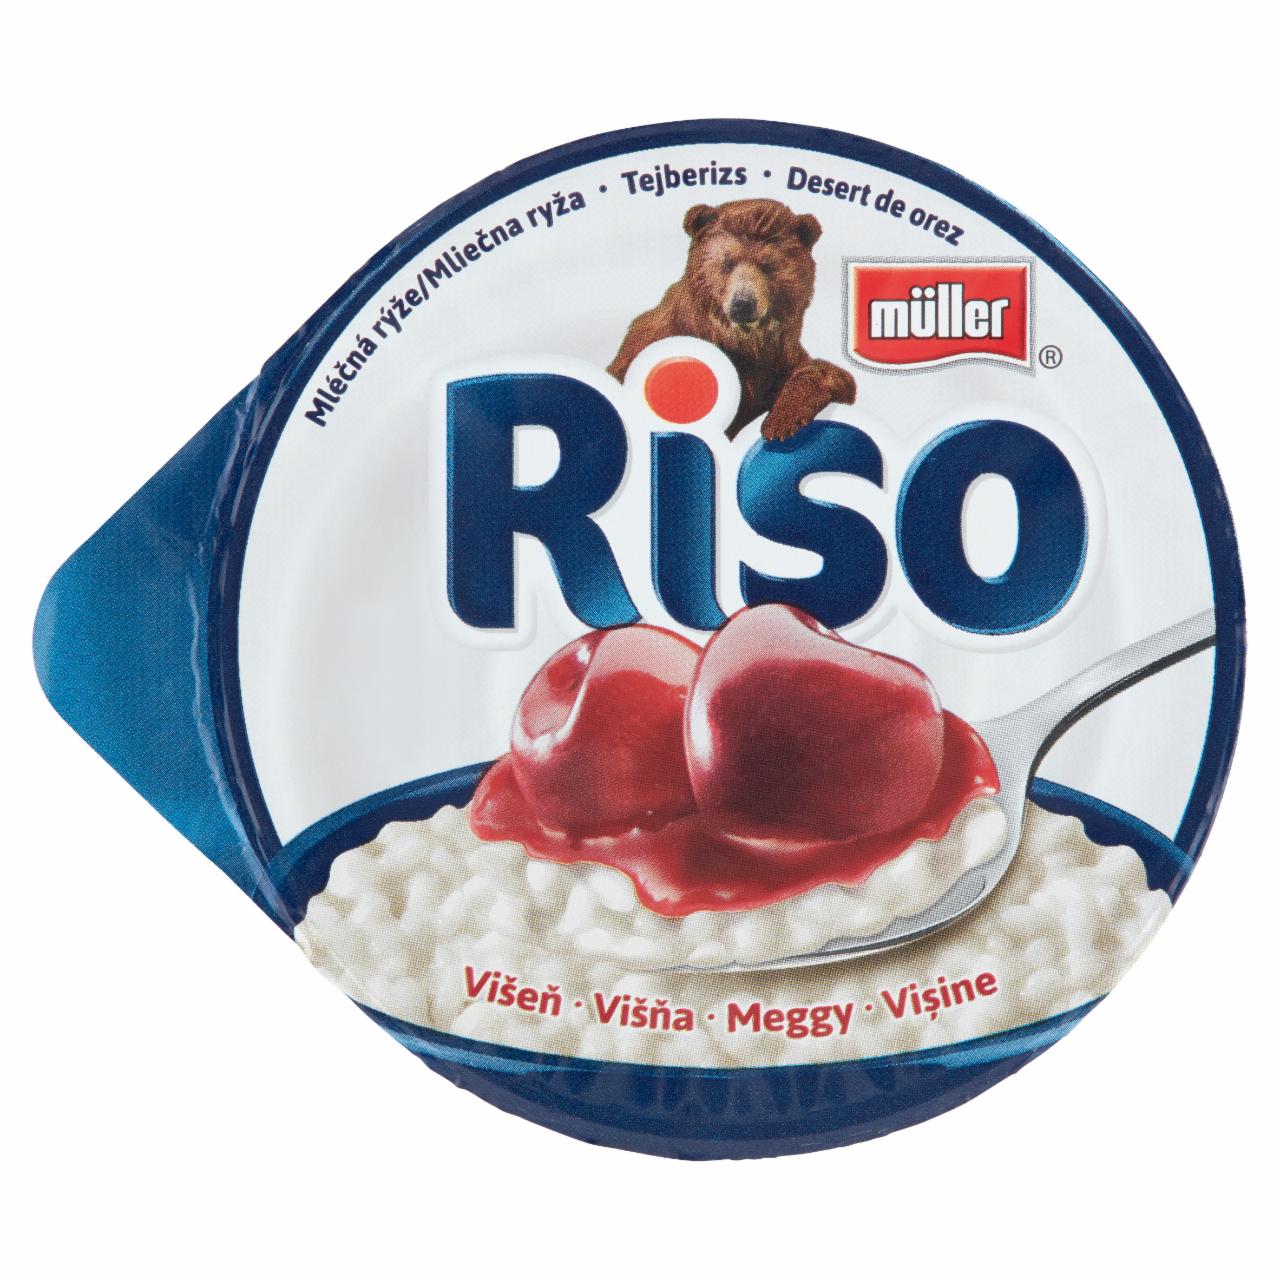 Képek - Müller Riso tejberizs desszert meggy készítménnyel 200 g